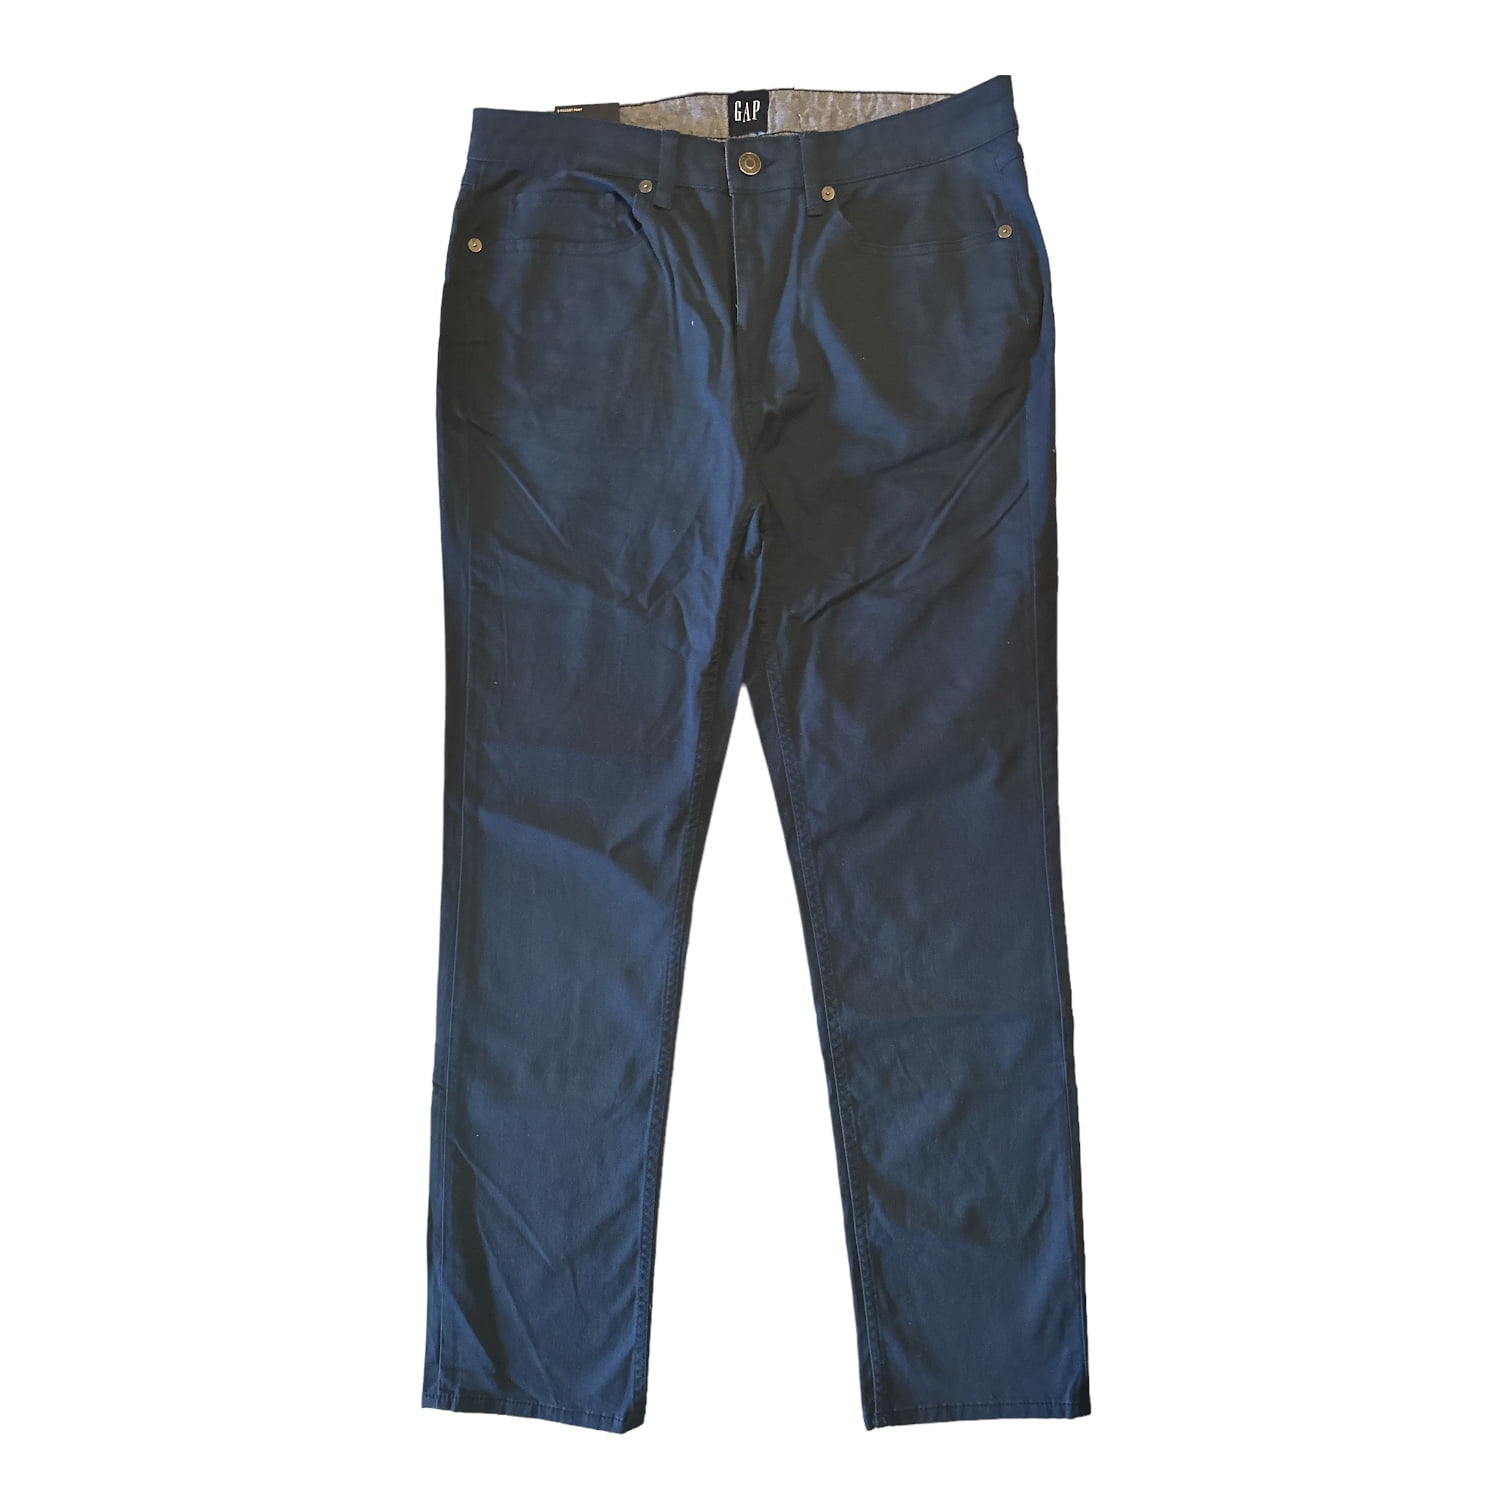 Gap Men's Super Soft Stretch Twill 5 Pocket Slim Fit Pant (Midnight, 32x30)  